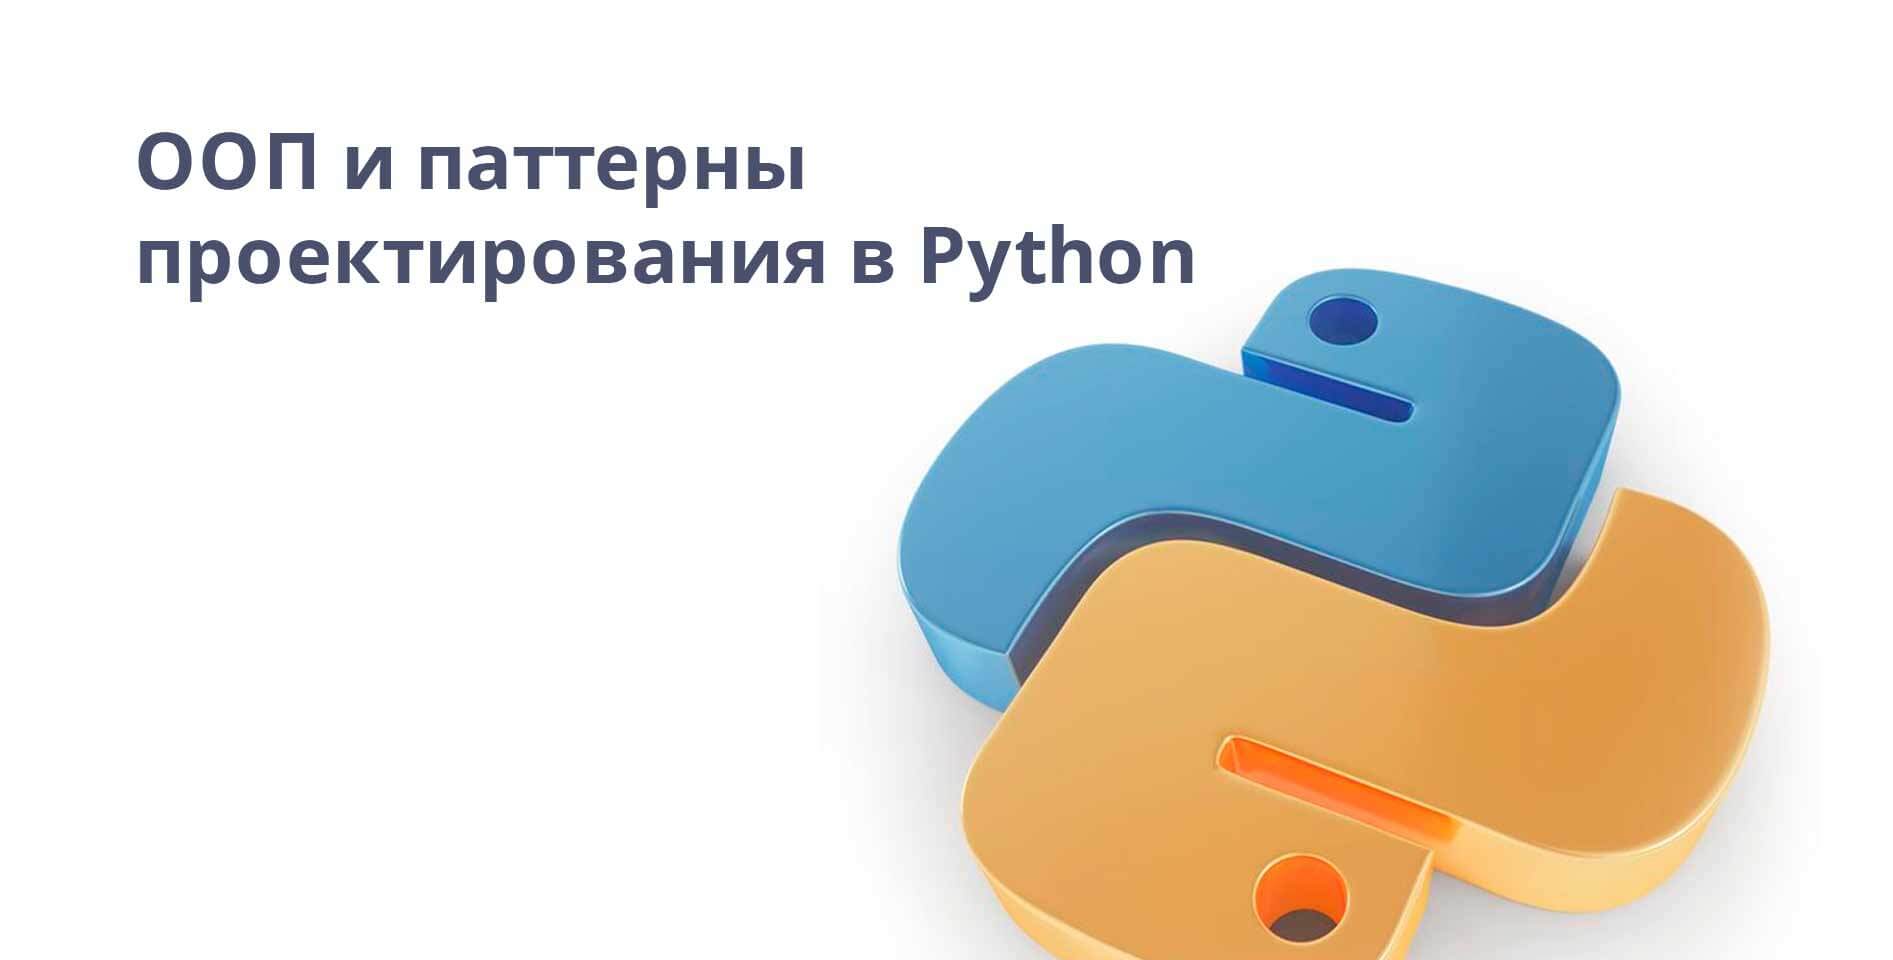 Coursera — ООП и паттерны проектирования в Python